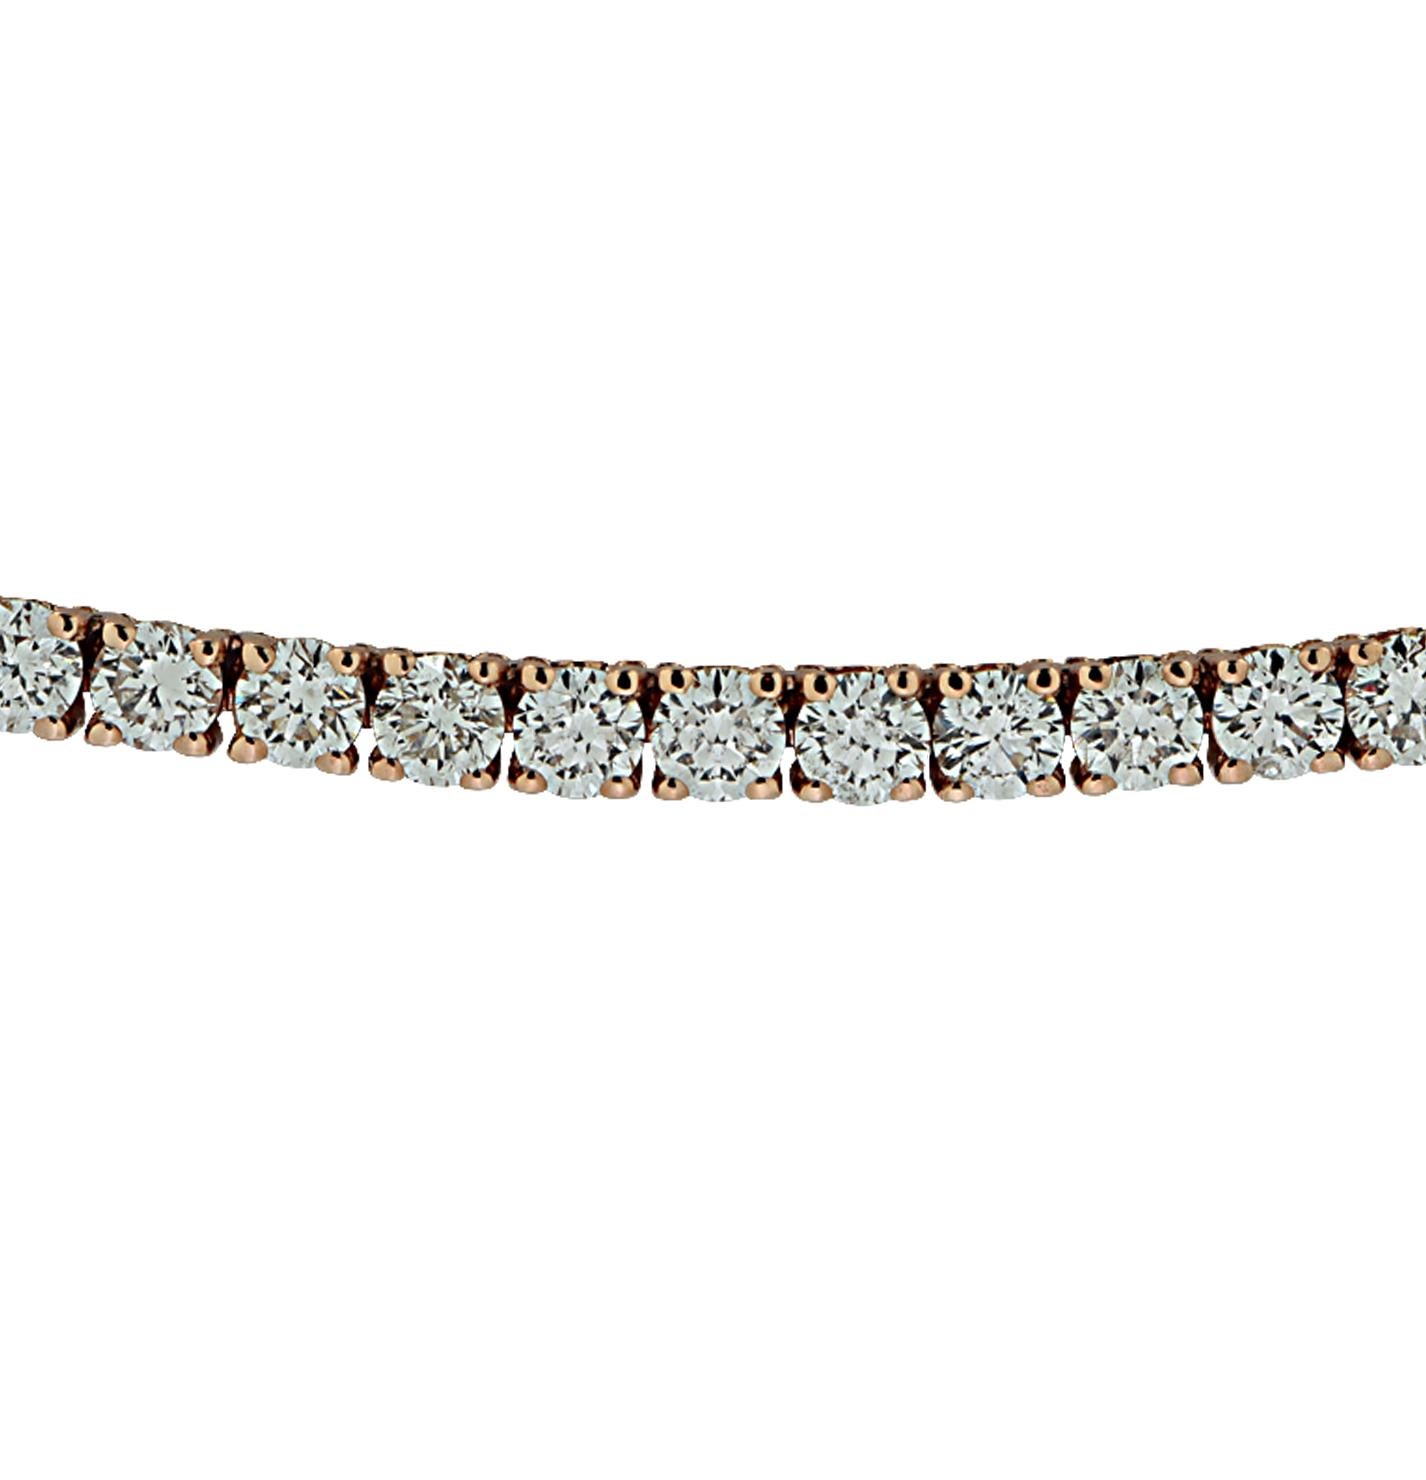 Exquisite geradlinige Diamantkette von Vivid Diamonds aus Roségold mit 179 runden Diamanten im Brillantschliff mit einem Gewicht von 5,96 Karat, Farbe F-G, Reinheit VS-SI. Jeder Diamant wurde sorgfältig ausgewählt, perfekt aufeinander abgestimmt und